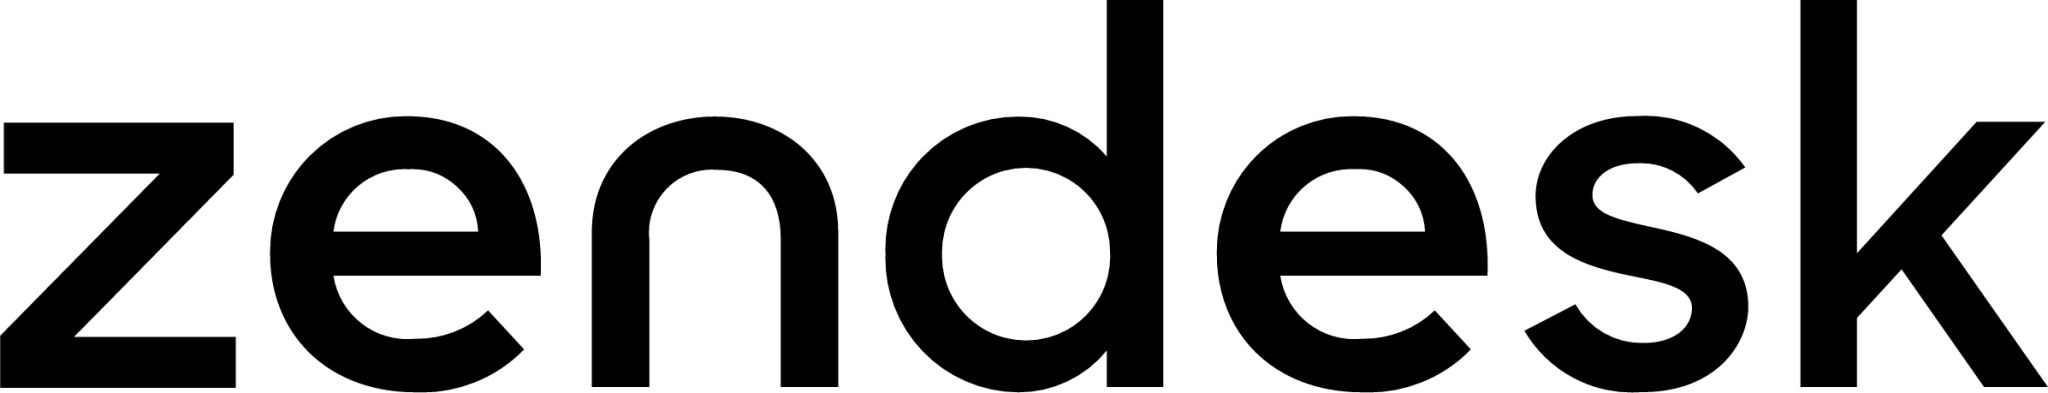 wordmark zendesk icon